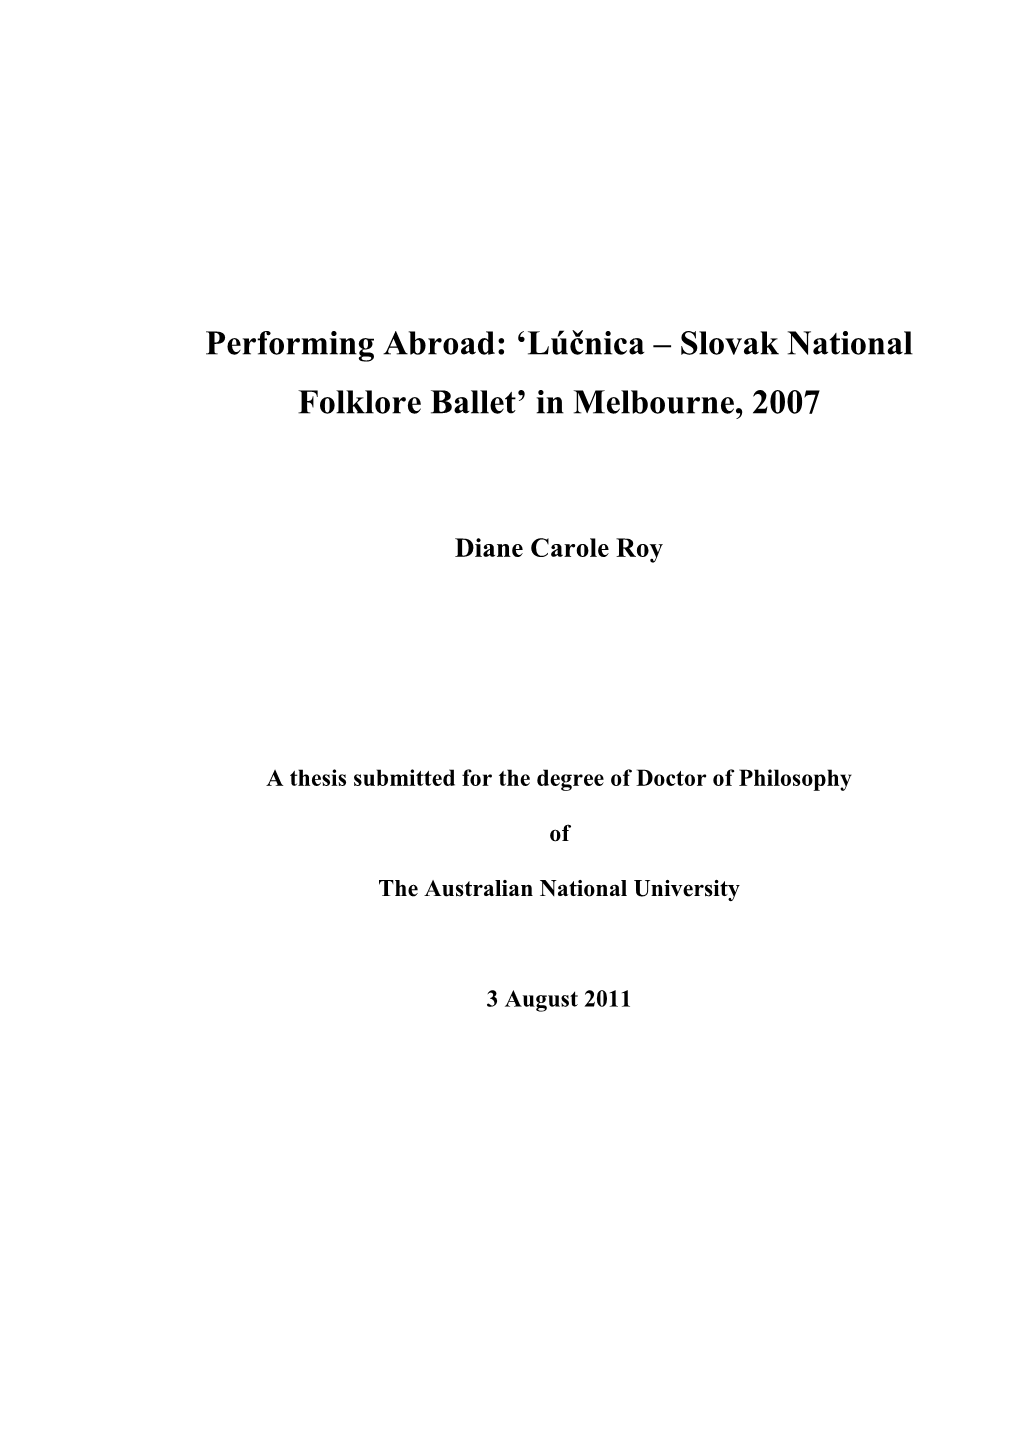 Lúčnica – Slovak National Folklore Ballet’ in Melbourne, 2007